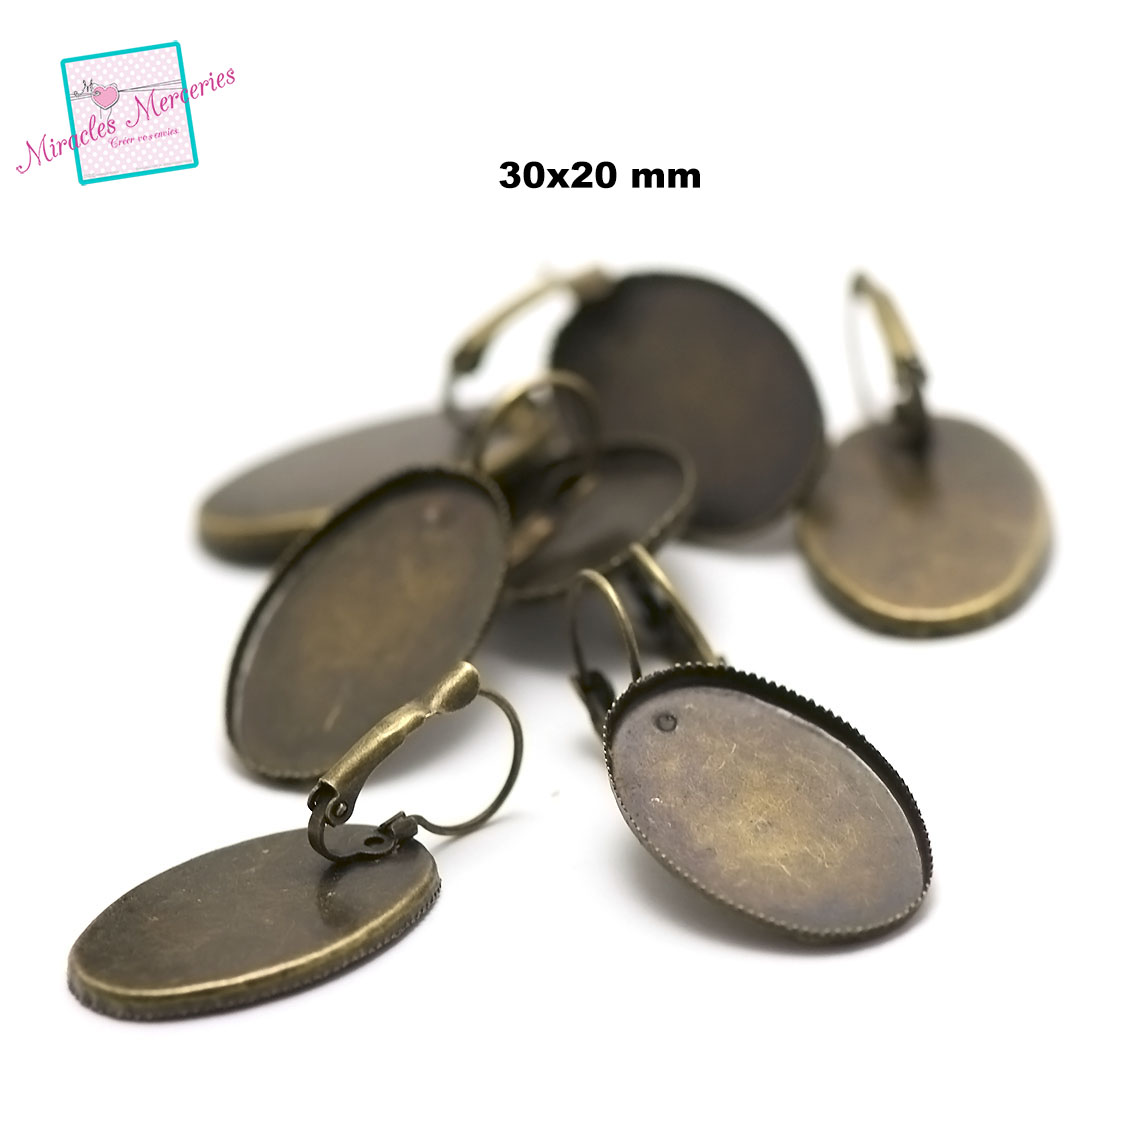 4 support cabochon ovale 30x20 mm, boucle d\'oreille dormeuse,bronze